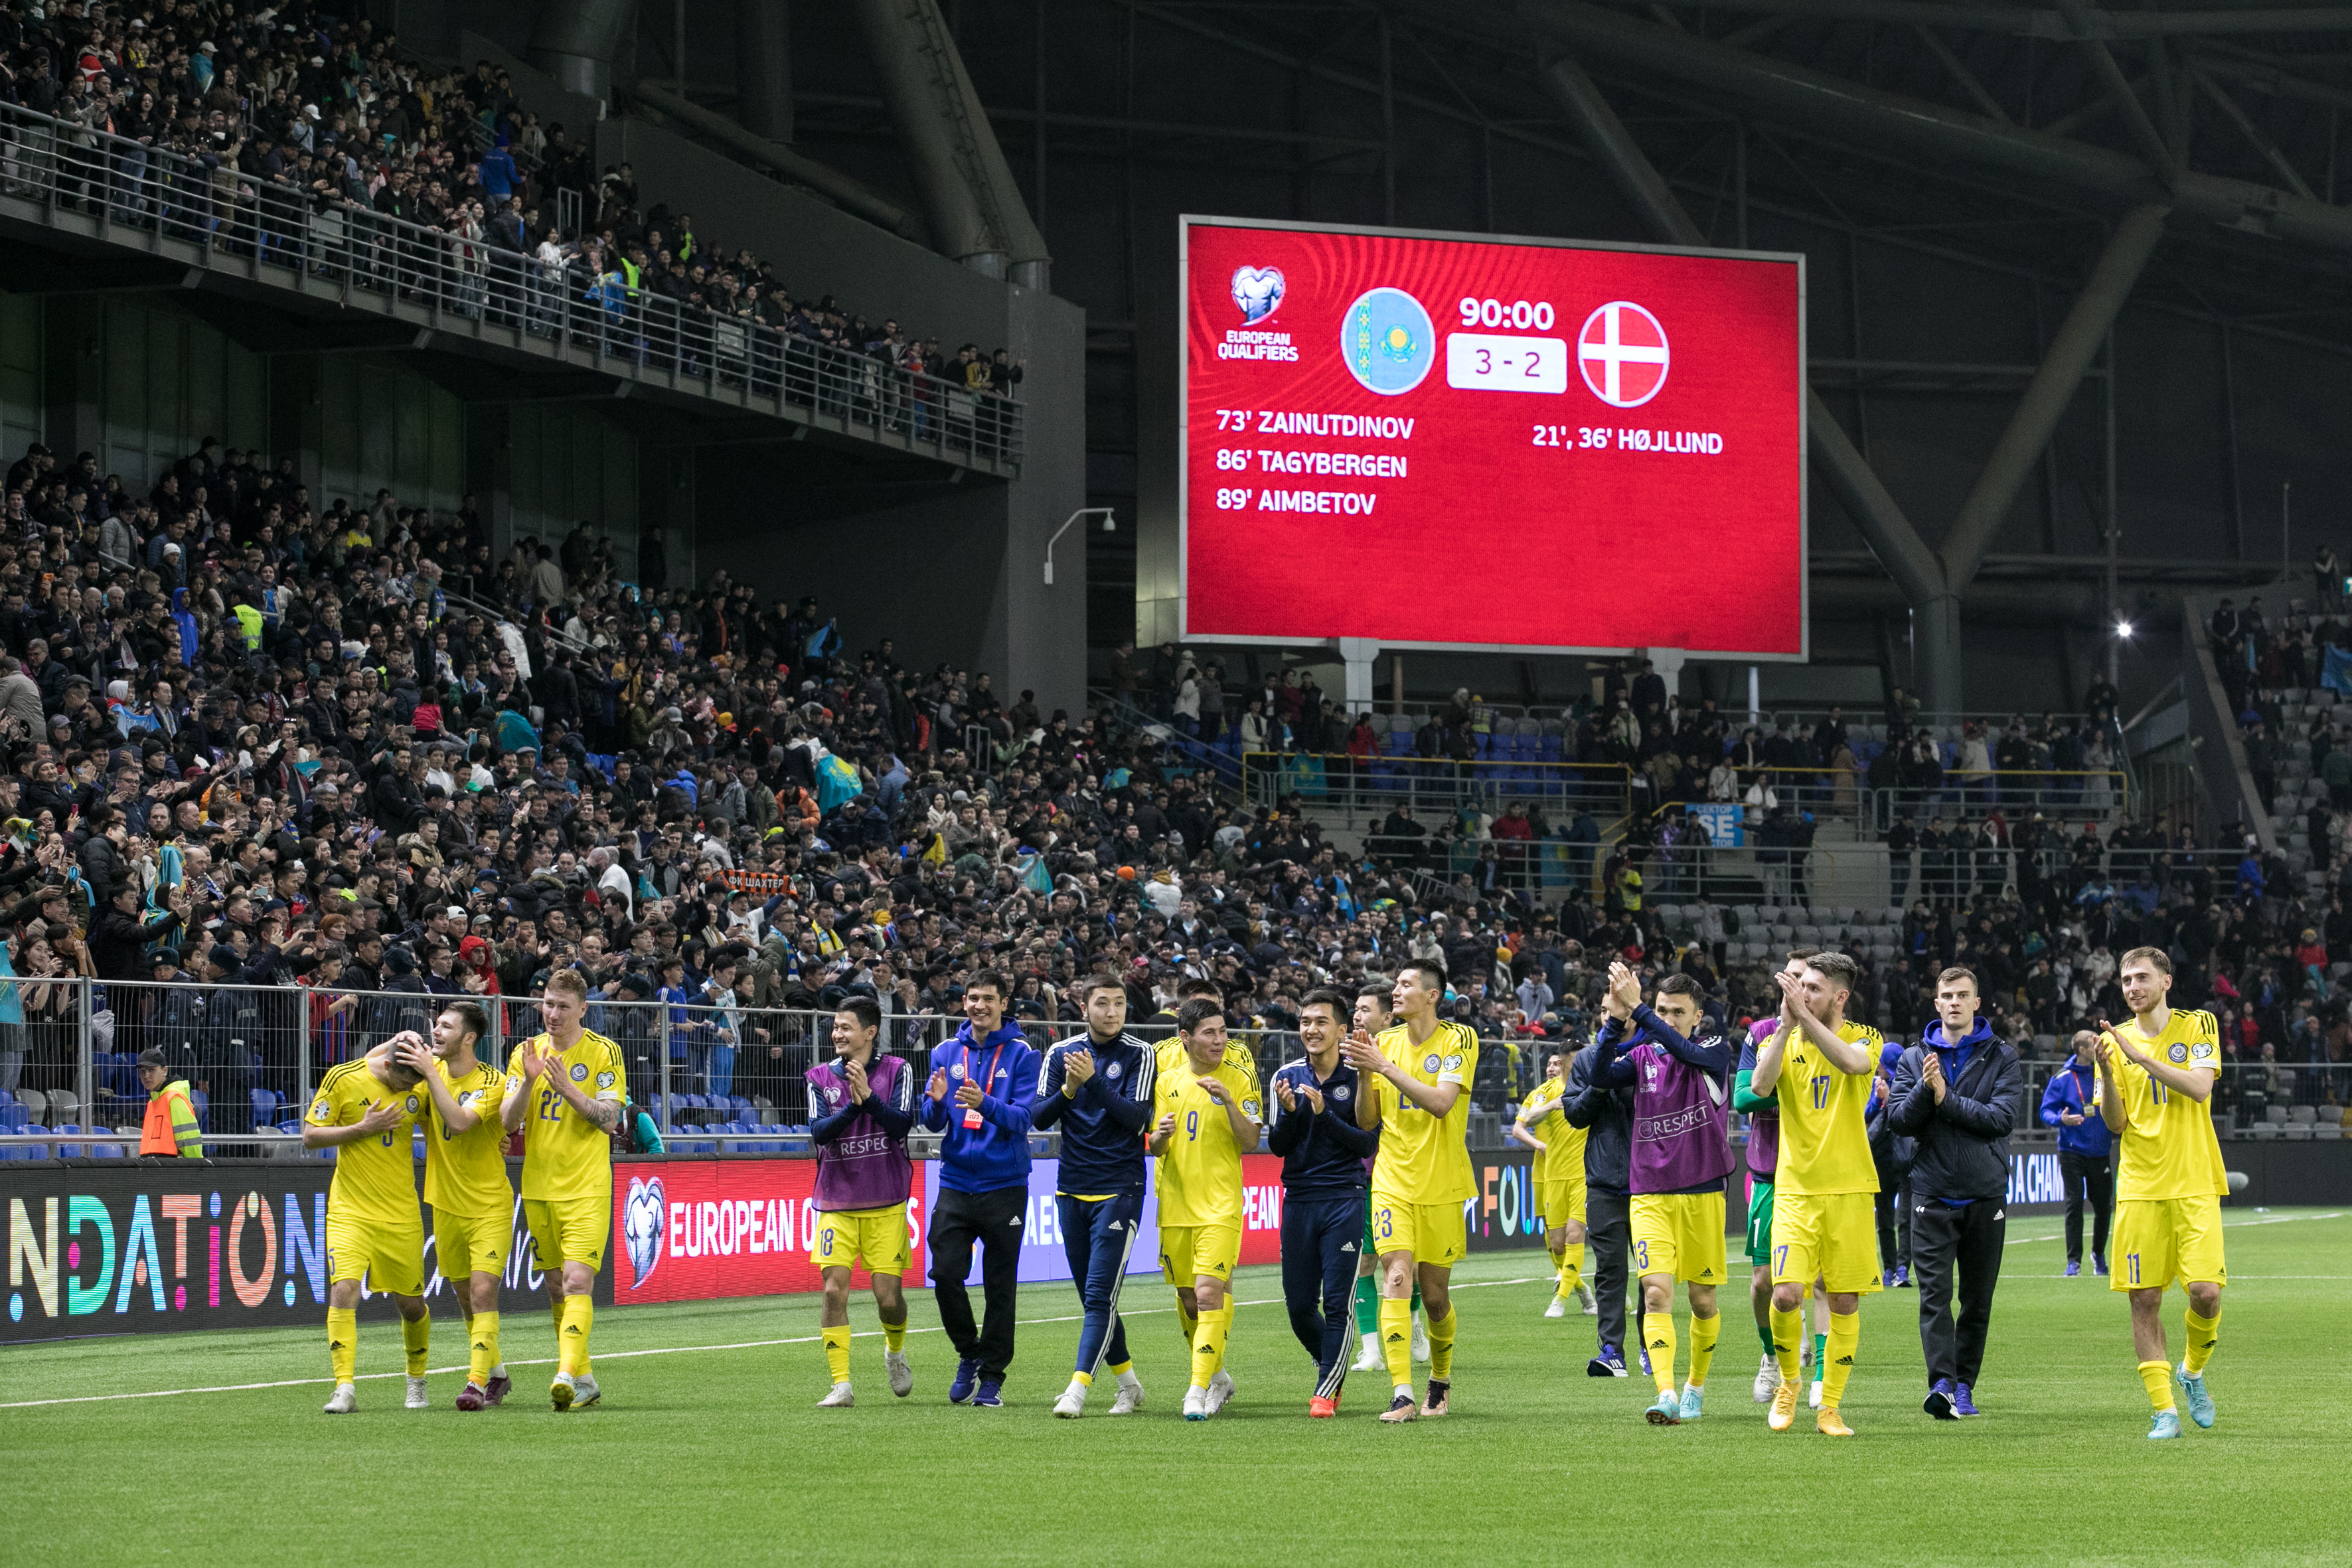 Министр культуры и спорта поздравил отечественную сборную по футболу с победой в матче Казахстан - Дания